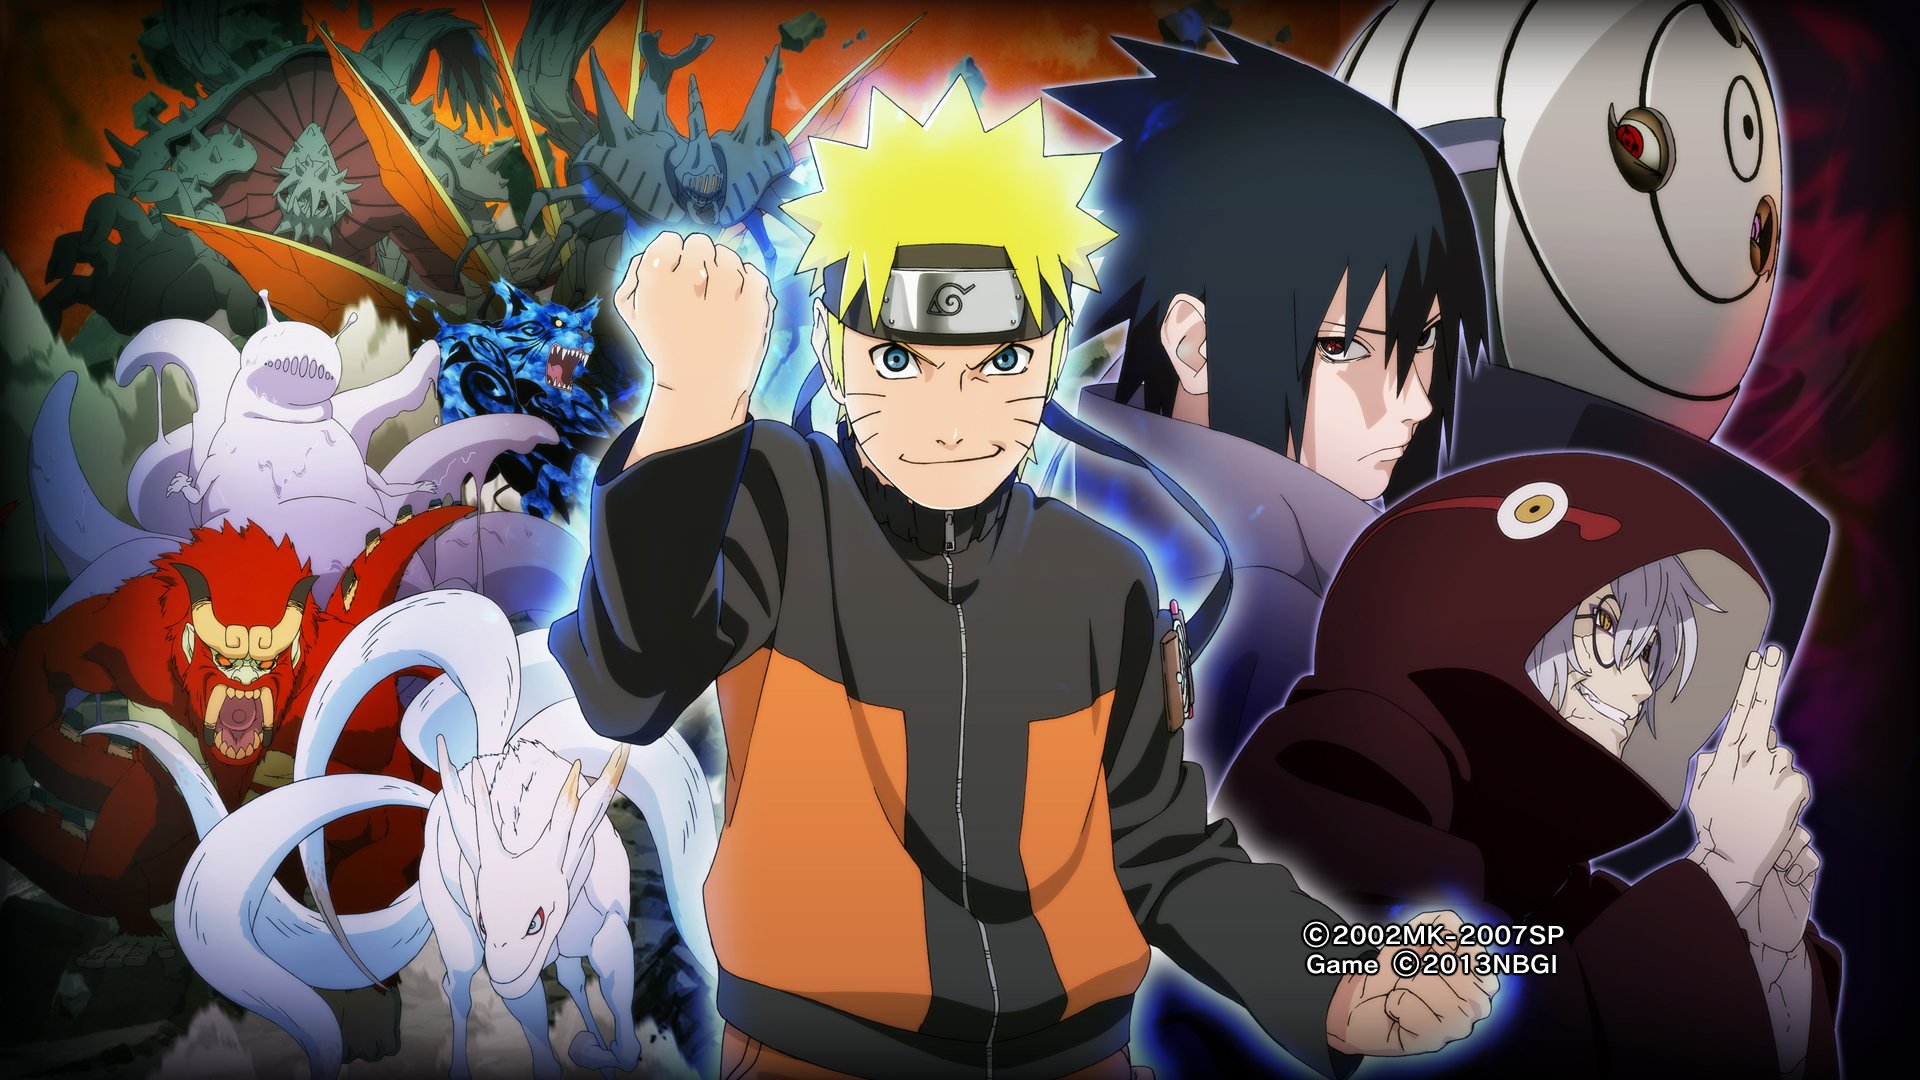 300+] Naruto Anime Wallpapers